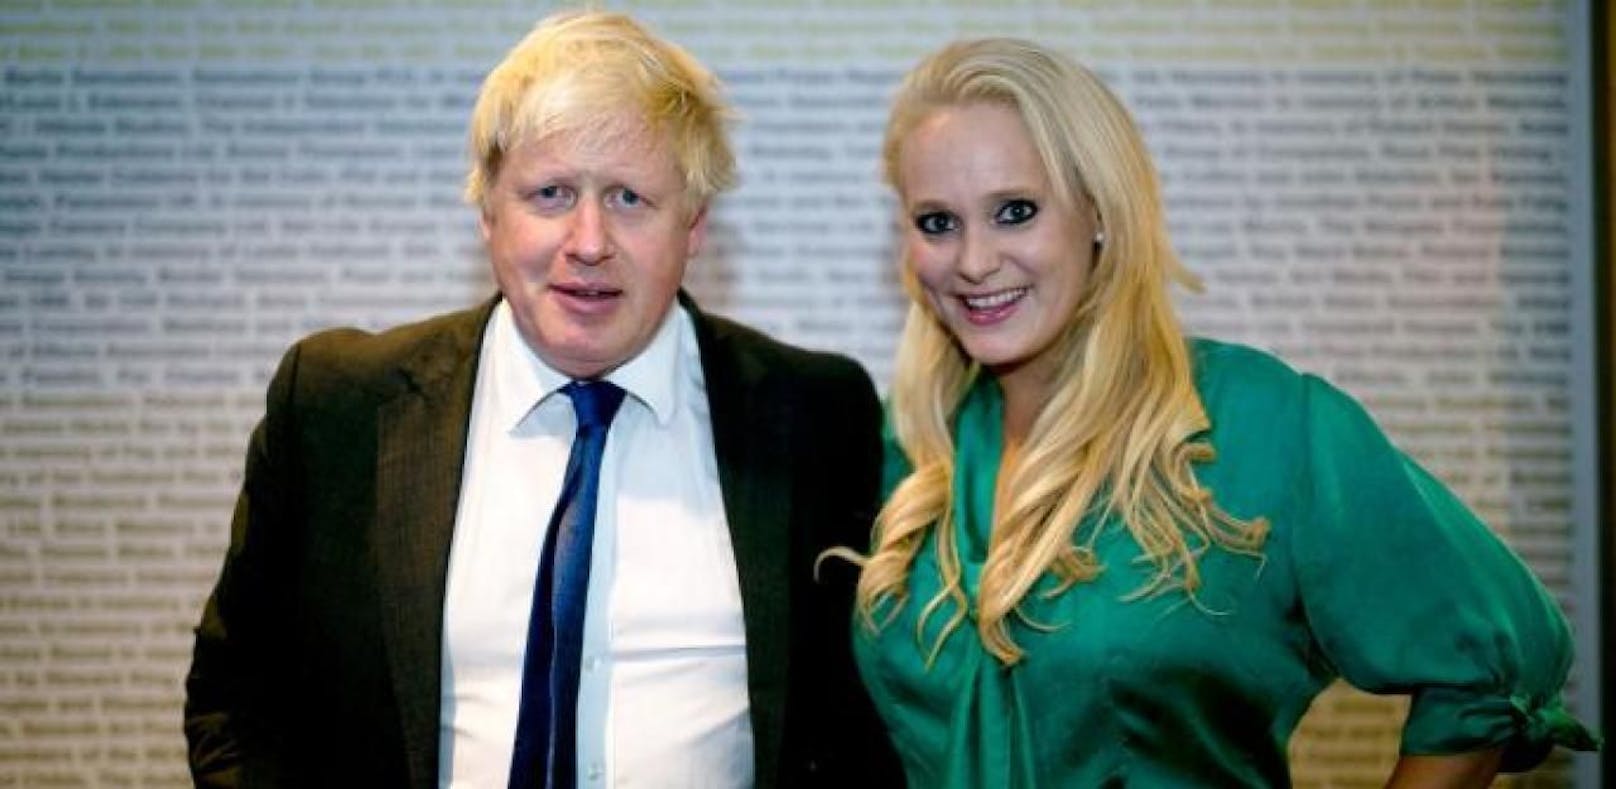 Das Ex-Model Jennifer Arcuri äußert sich jetzt über ihre Beziehung zum britischen Premierminister Boris Johnson